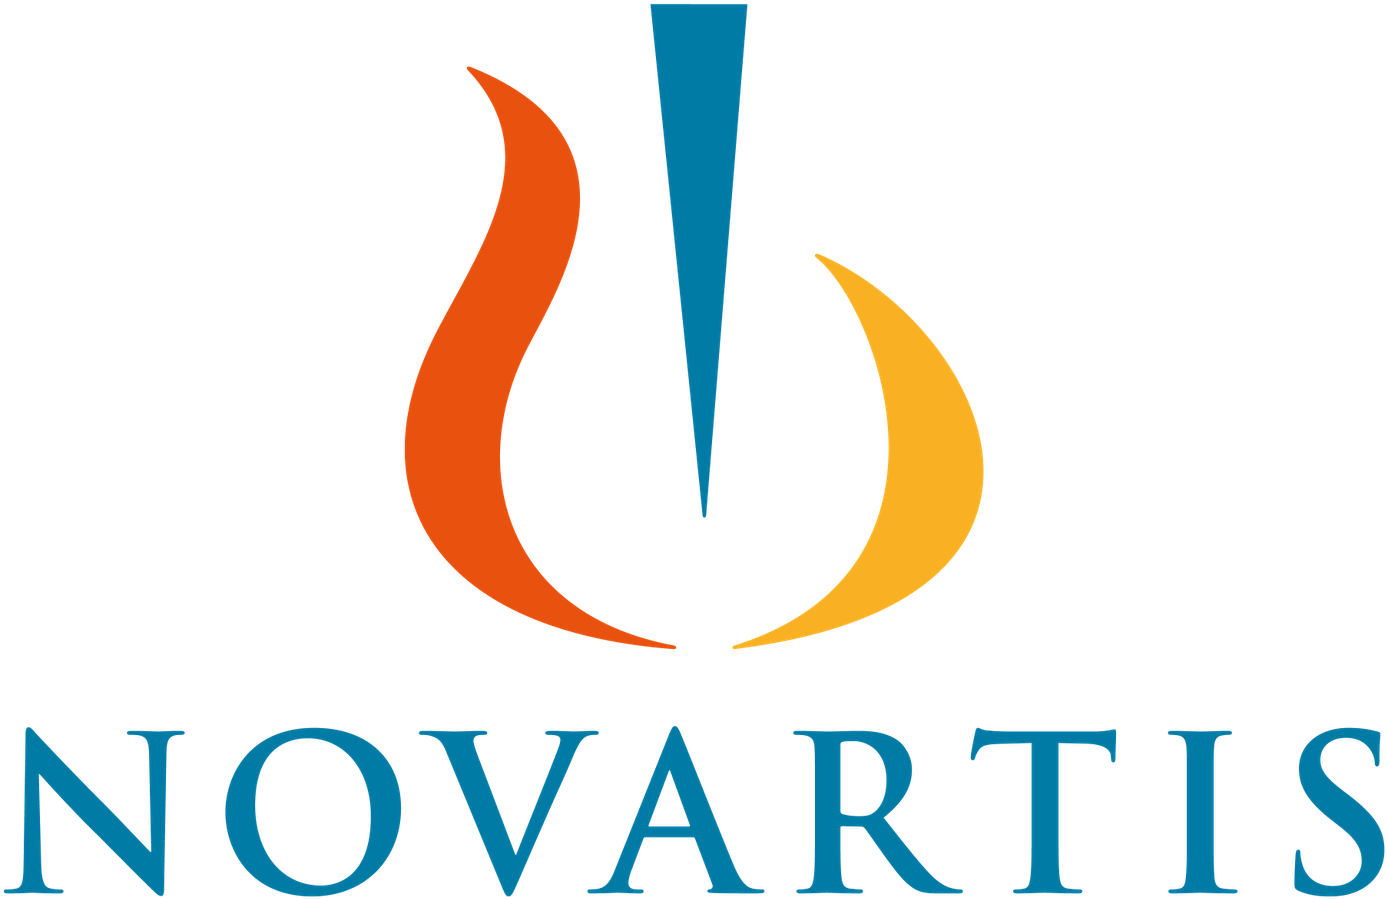 SPEAK VOICEOVER INDTALING Novartis logo